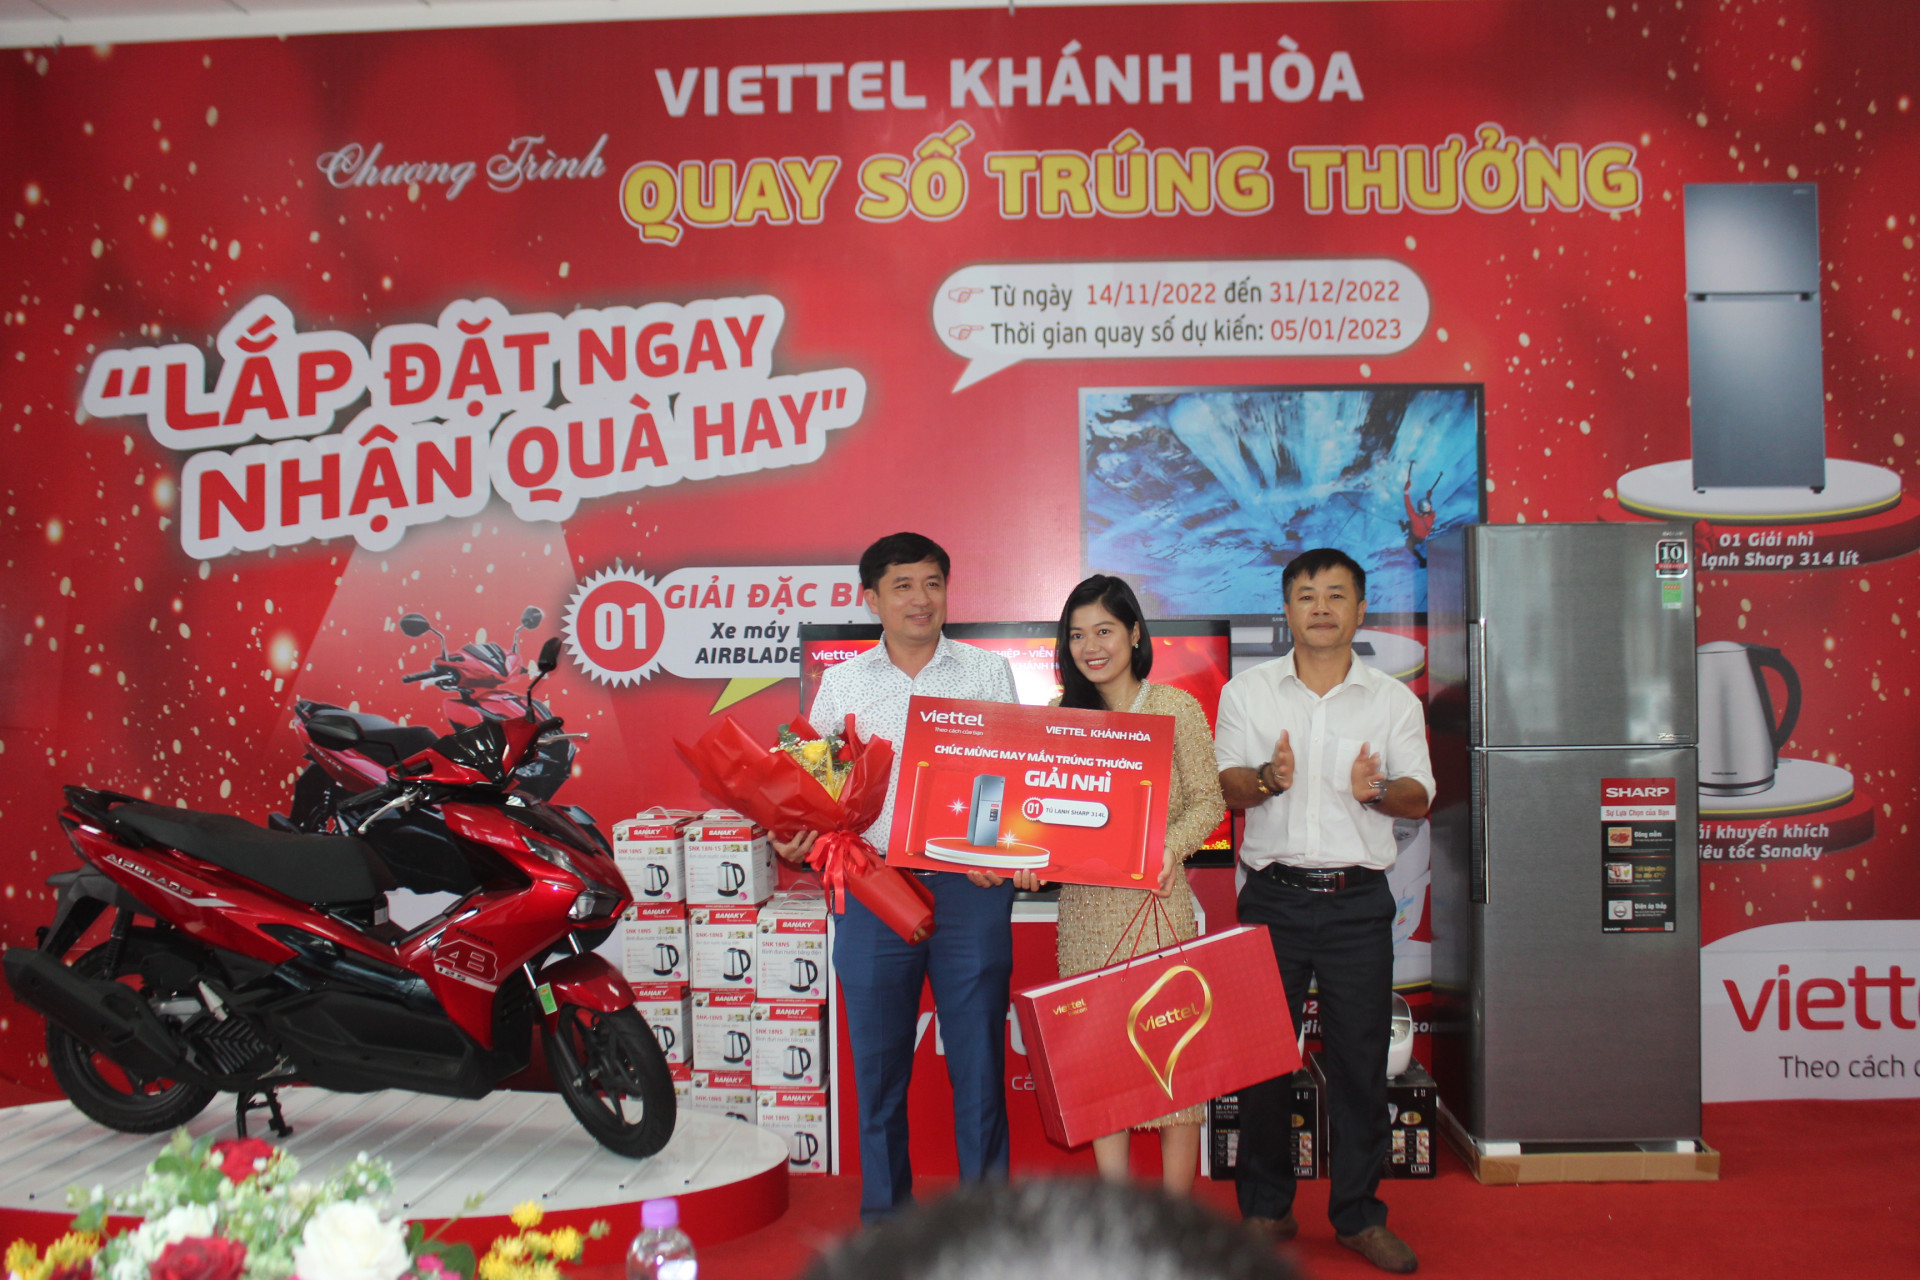 Đại diện Viettel Khánh Hòa trao giải Nhì cho khách hàng Trương Quang Thịnh.